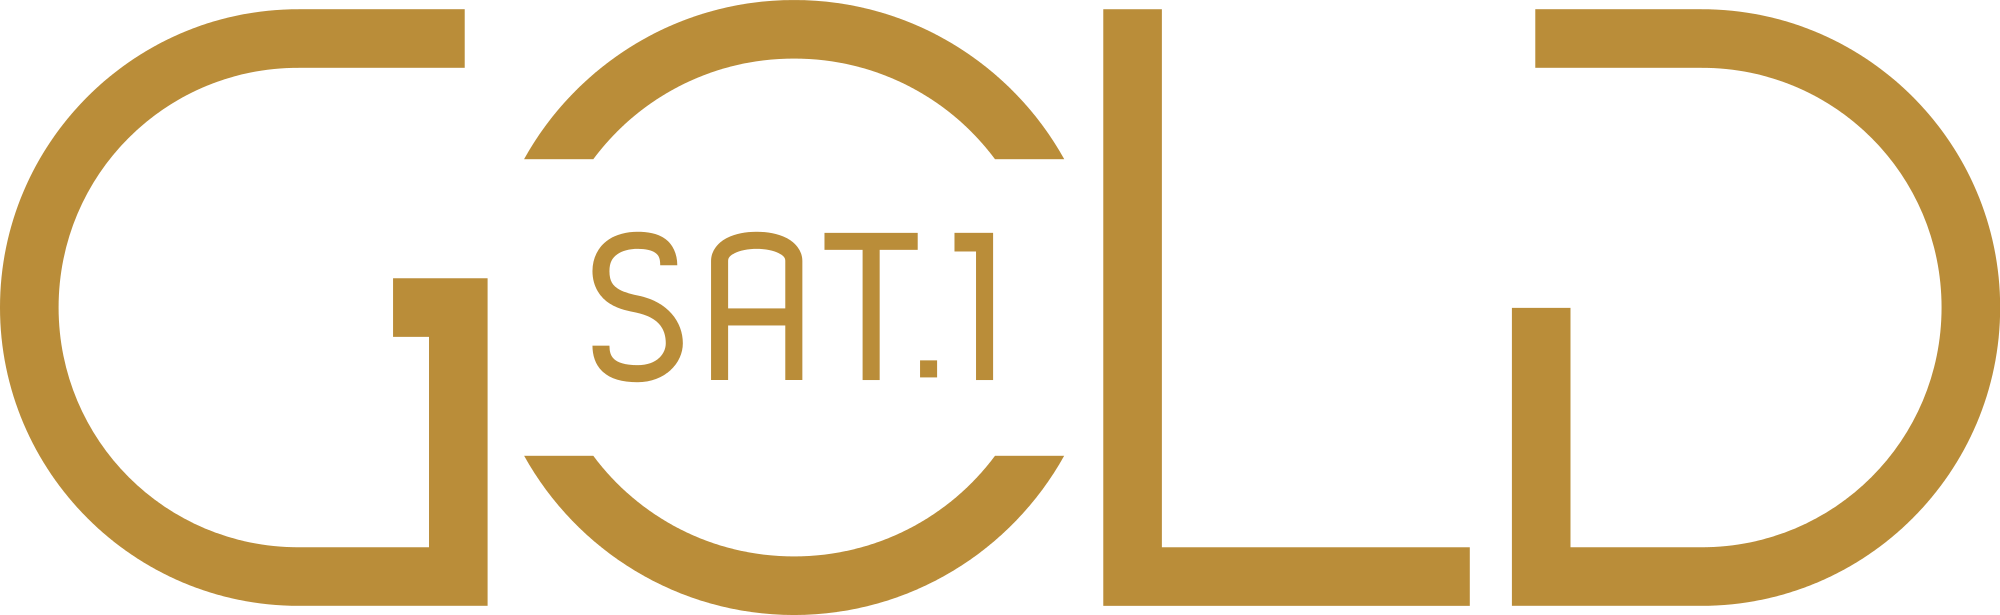 Open - Sat 1 Gold Logo (2000x615)